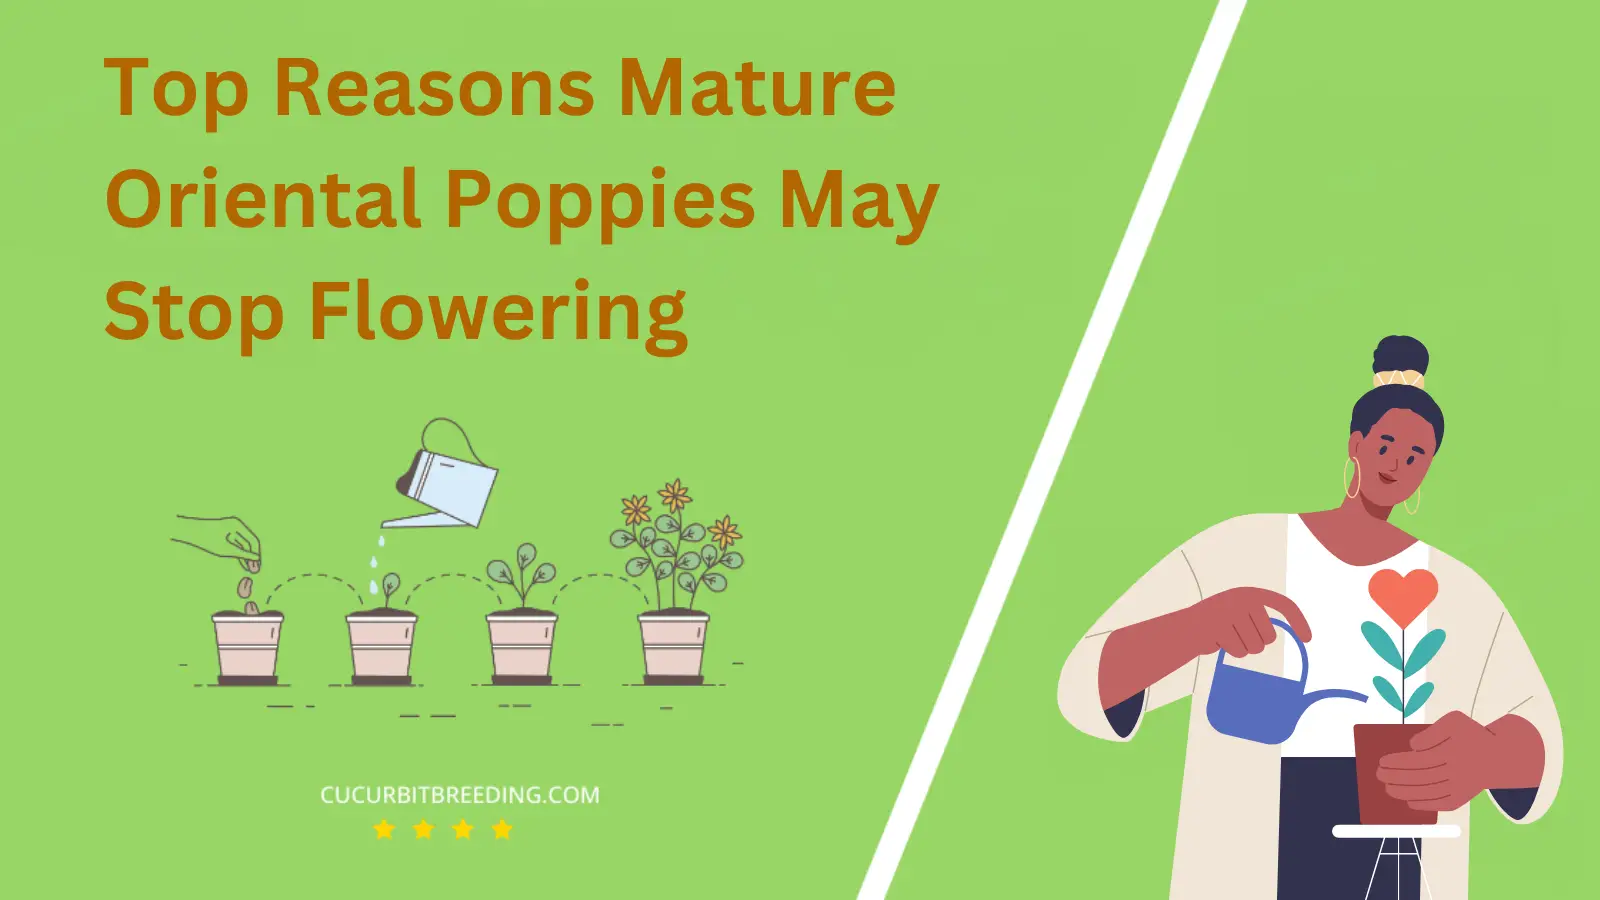 Top Reasons Mature Oriental Poppies May Stop Flowering